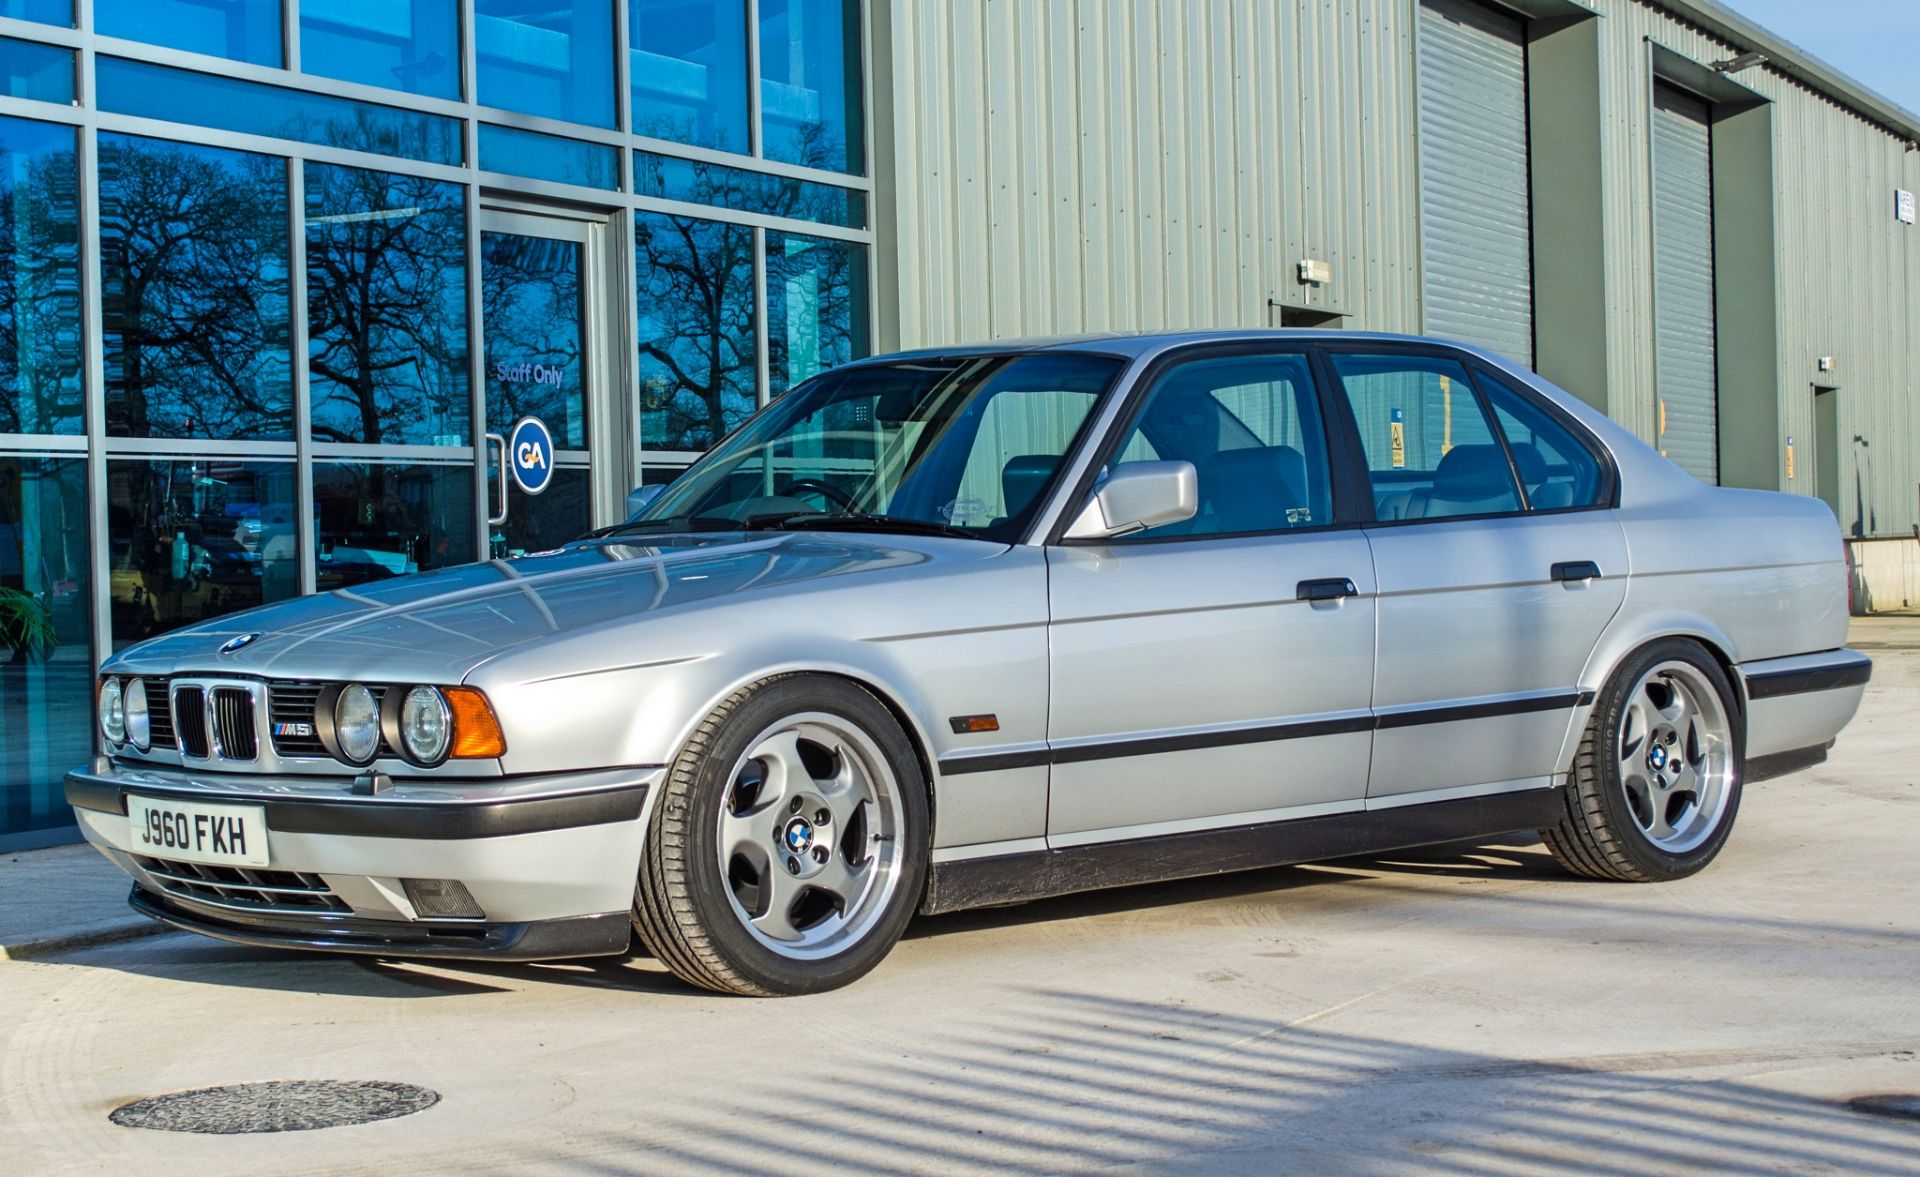 1991 BMW M5 E34 3.6 litre 4 door saloon - Image 4 of 59